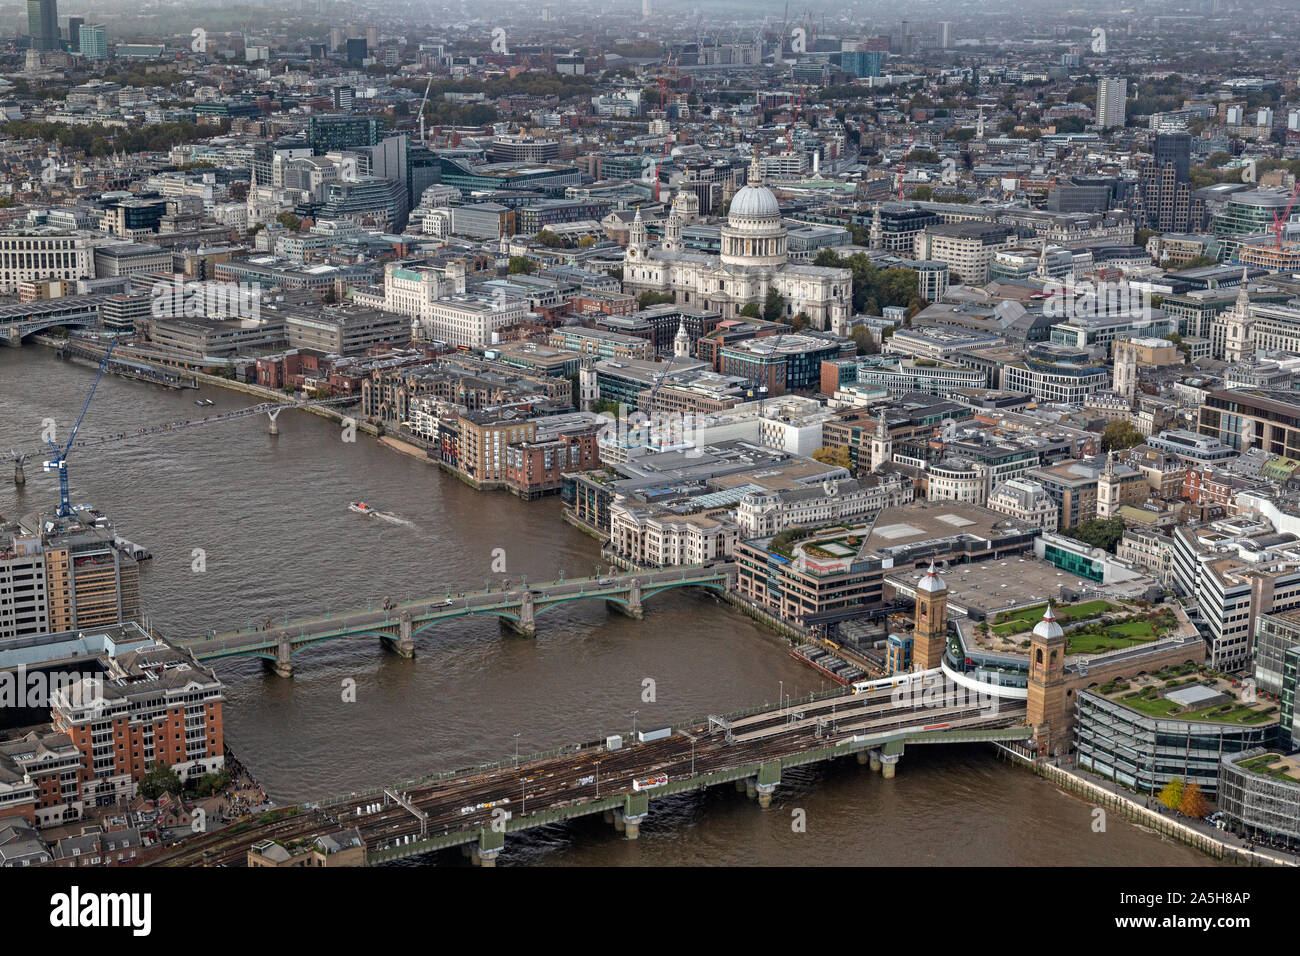 Una vista aérea, mirando al oeste hasta el río Támesis en Londres, mostrando Southwark Bridge, puente de ferrocarril, Millennium Bridge y la Catedral de St. Paul. Foto de stock